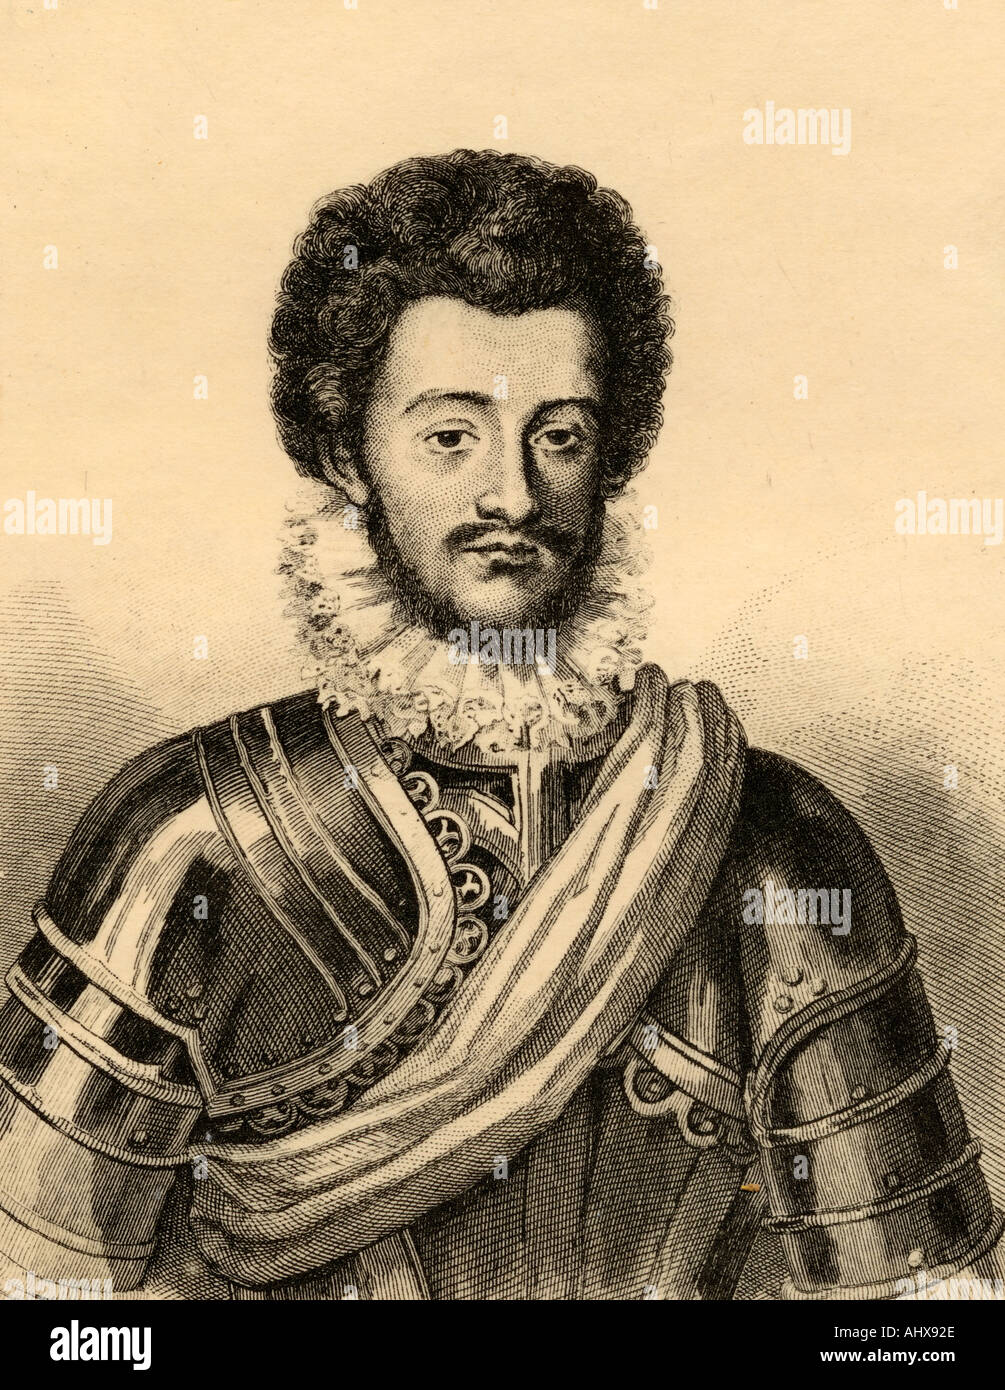 Karl von Lothringen, Herzog von Mayenne, aka Charles de Guise, 1554 - 1611. Französischen Adligen und ein militärischer Führer der Katholischen Liga. Stockfoto